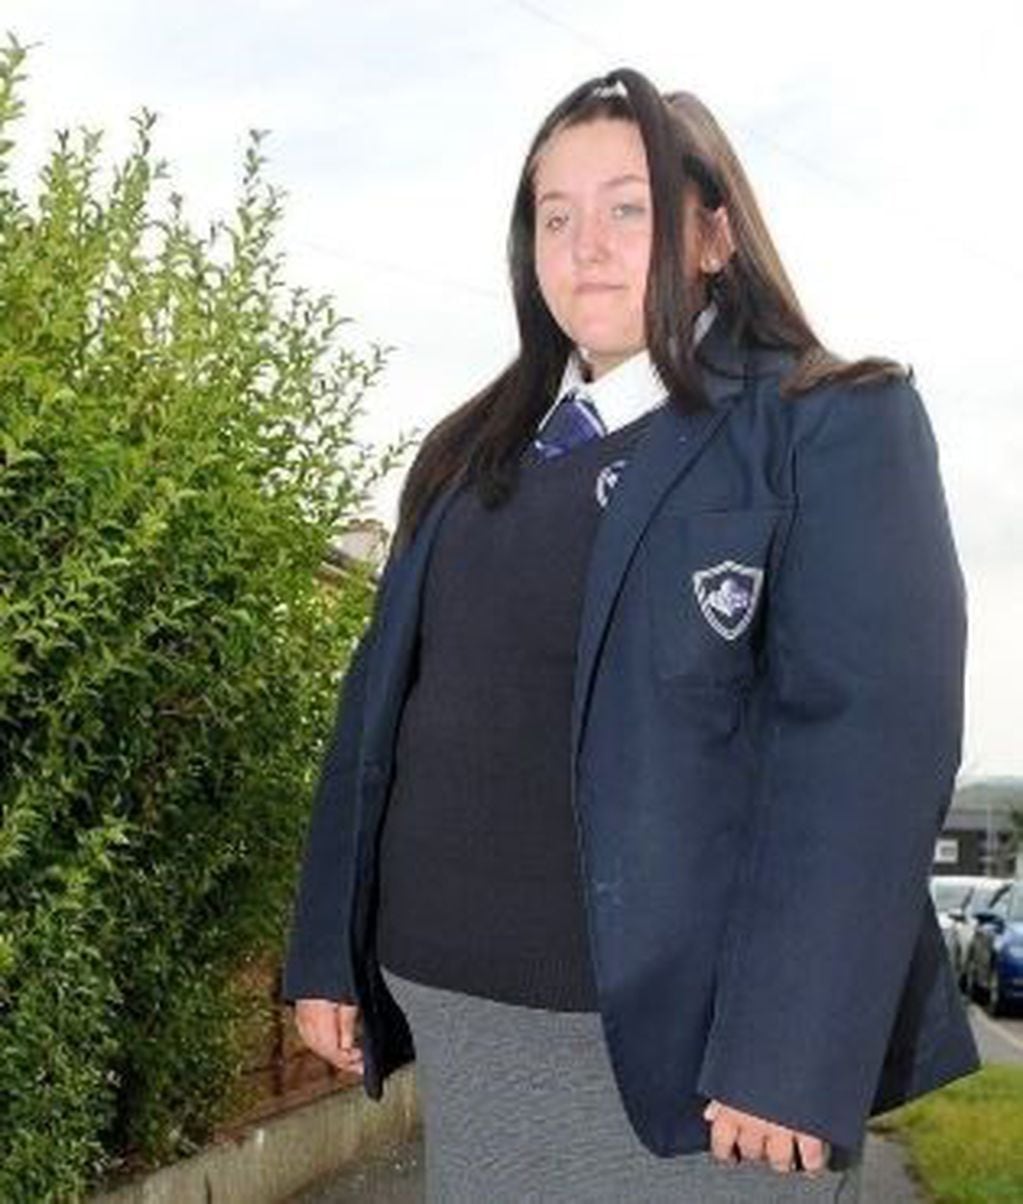 Una alumna de 14 años de un colegio de Inglaterra fue obligada a abandonar el establecimiento educativo porque "era muy grande" para usar el uniforme correspondiente.